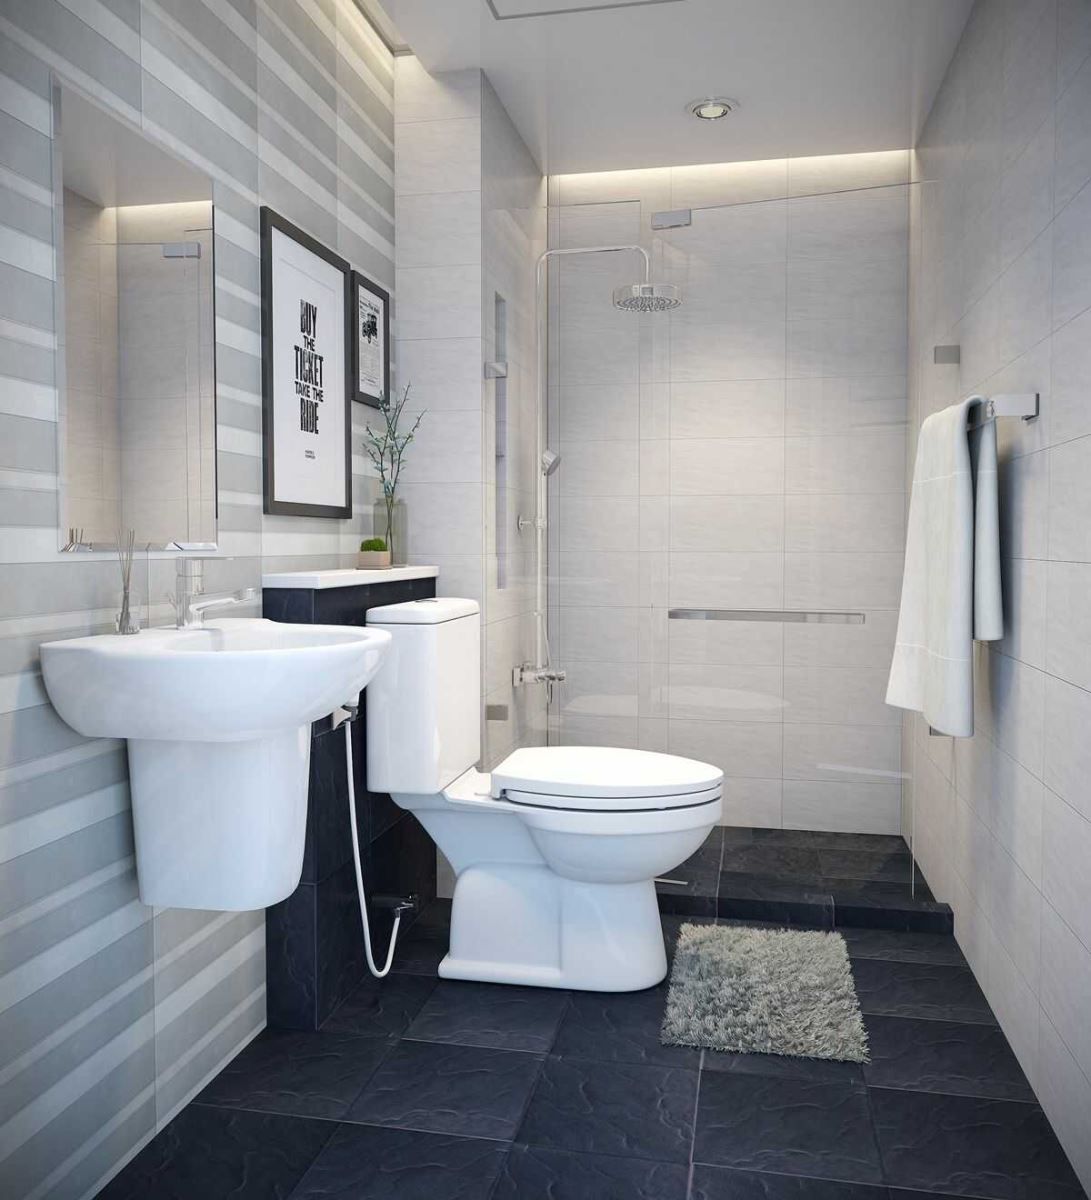 Lựa chọn thiết bị vệ sinh phù hợp với diện tích nhà tắm nhỏ